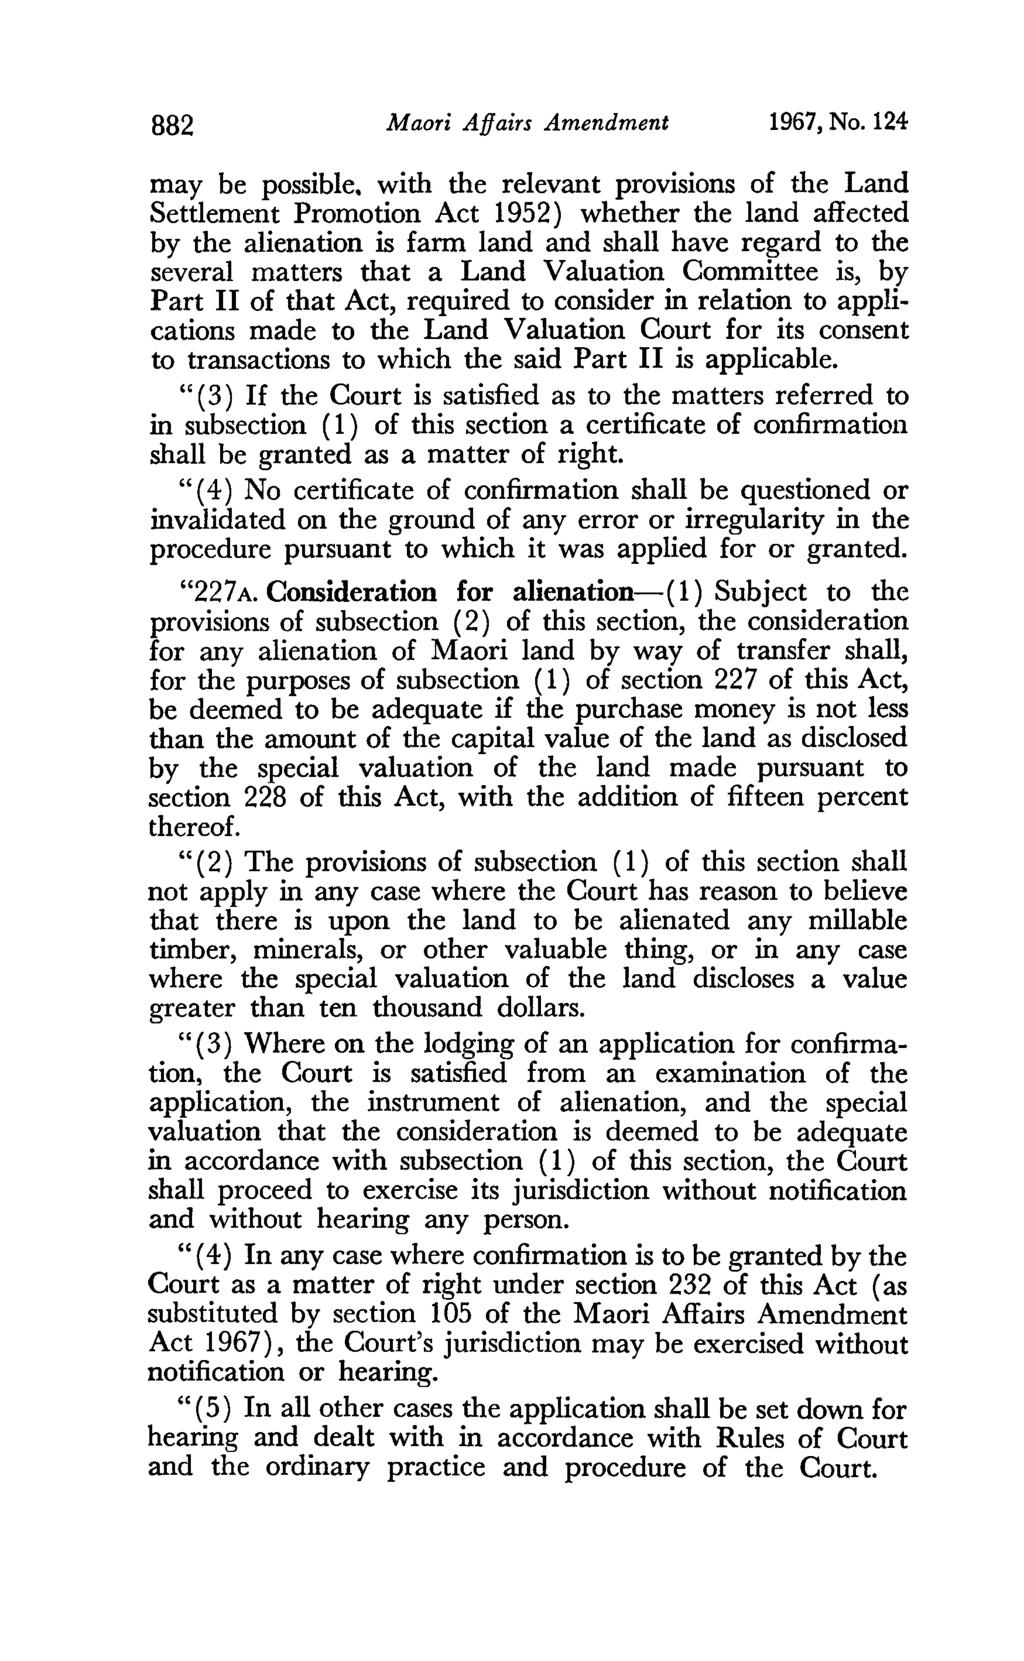 BB2 Maori Affairs Amendment 1967, No. 124 may be possible.